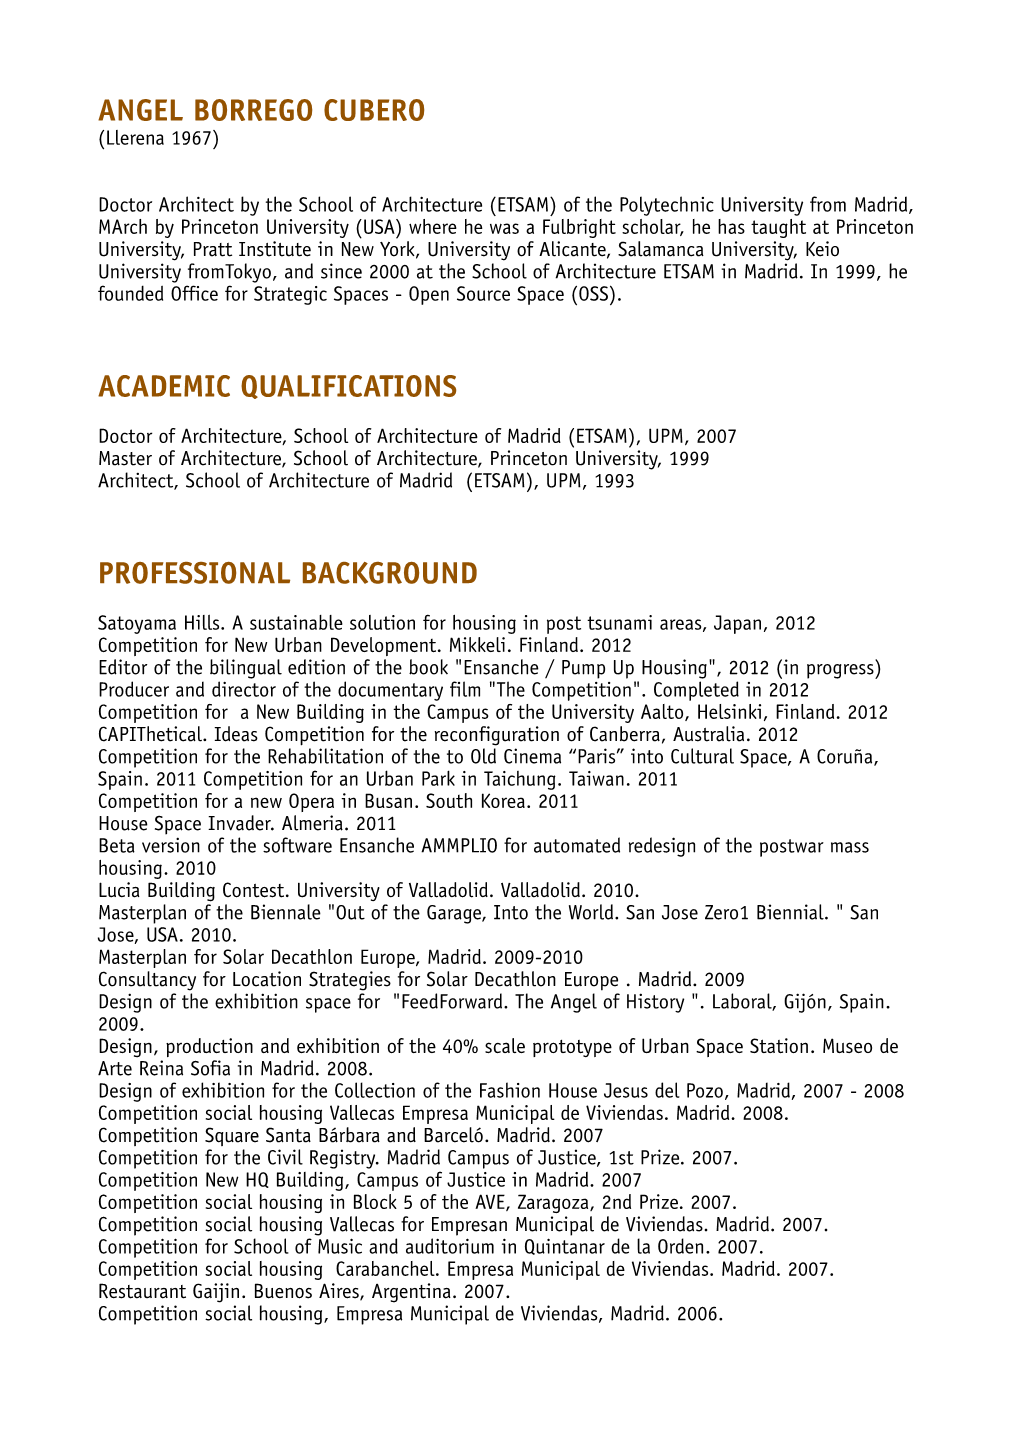 Angel Borrego Cubero Academic Qualifications